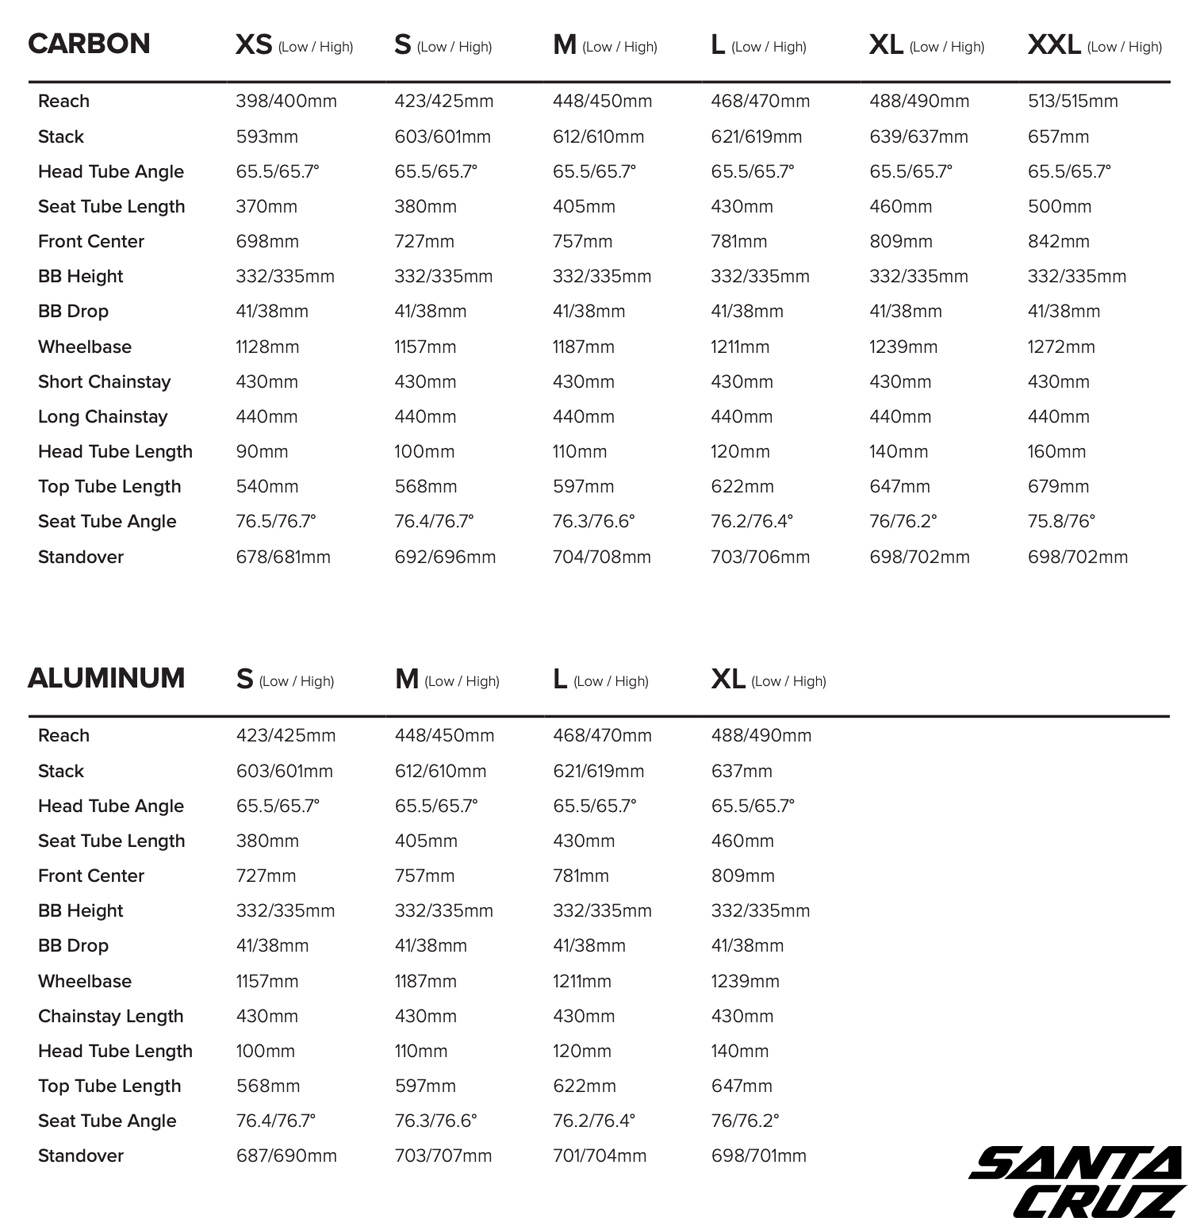 Tabella completa dei dati delle geometrie dei telai in carbonio e alluminio della Santa Cruz Tallboy 2020